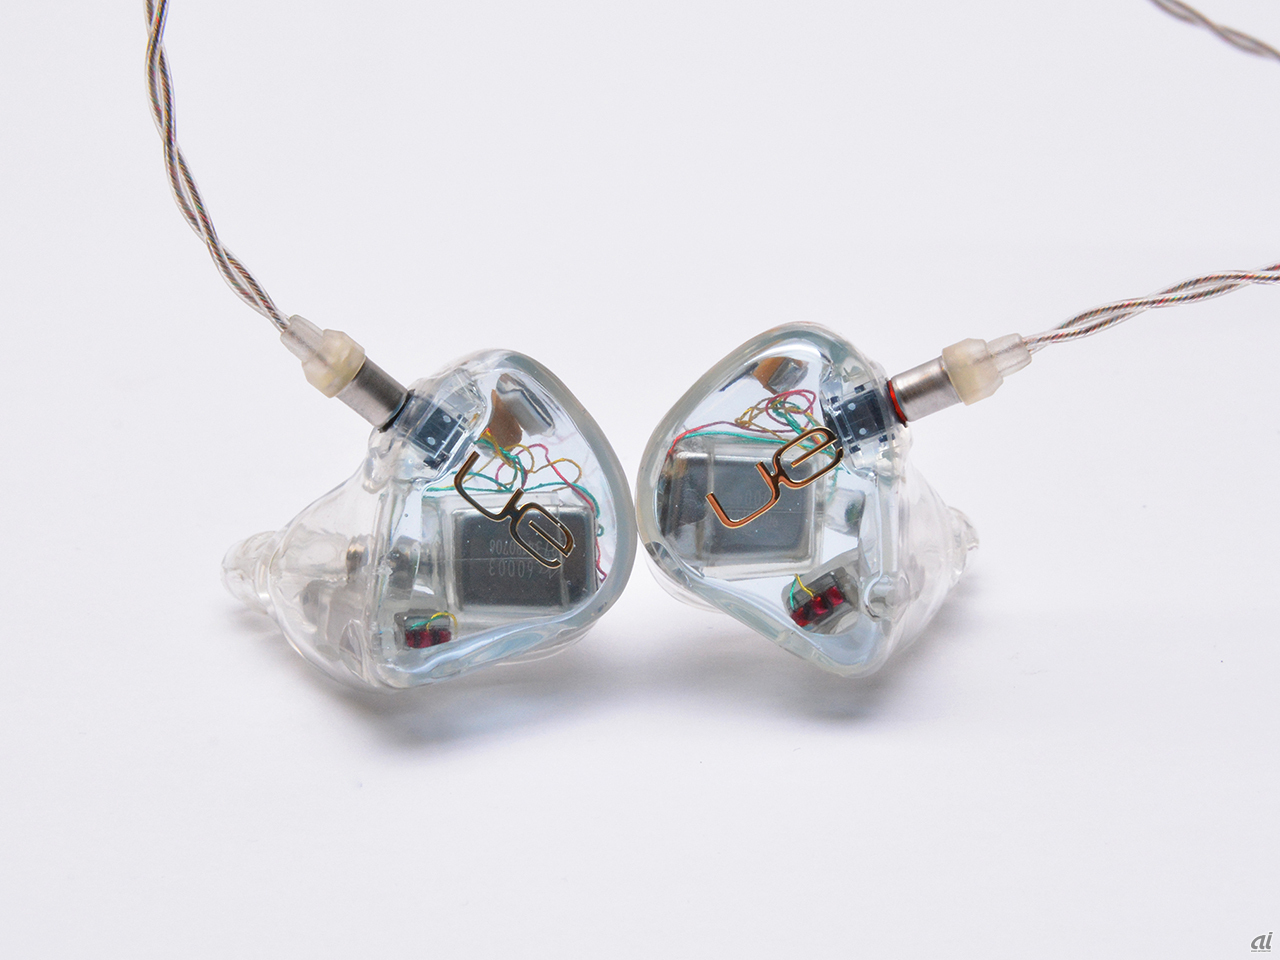 e☆イヤホン、「Ultimate ears」ユニバーサル7モデルの取扱を開始 